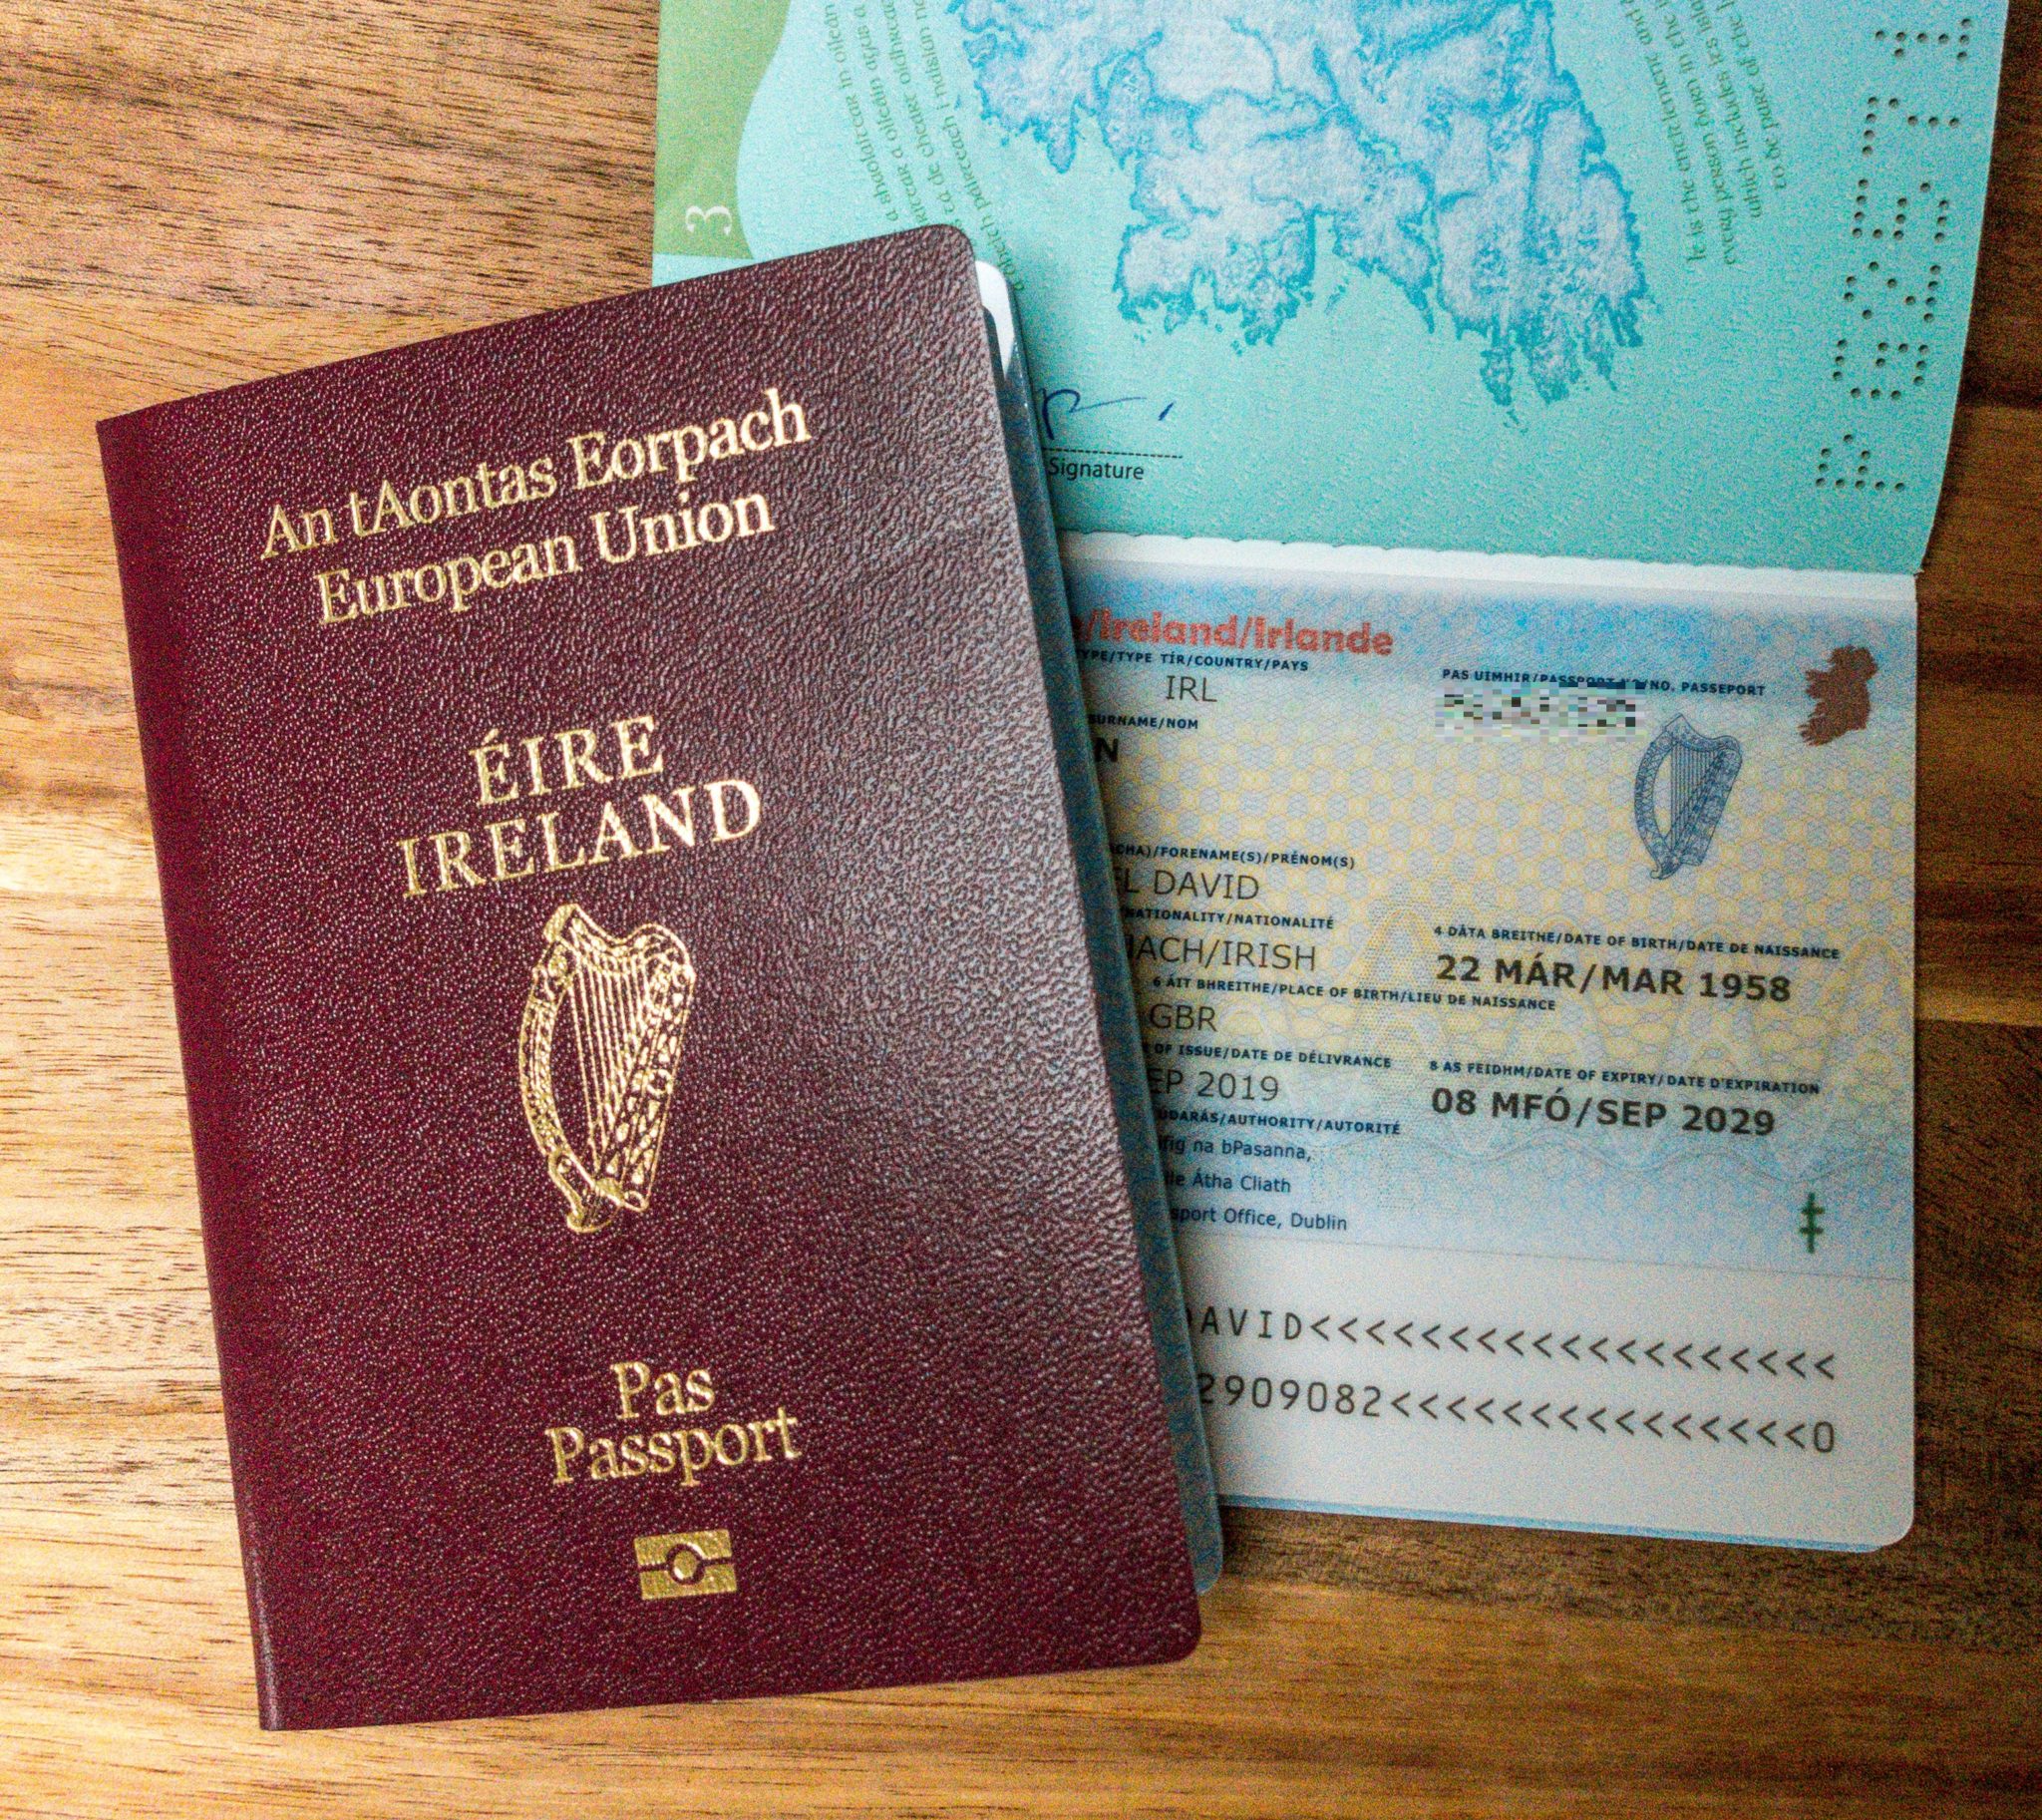 An Irish passport is seen in October 2019